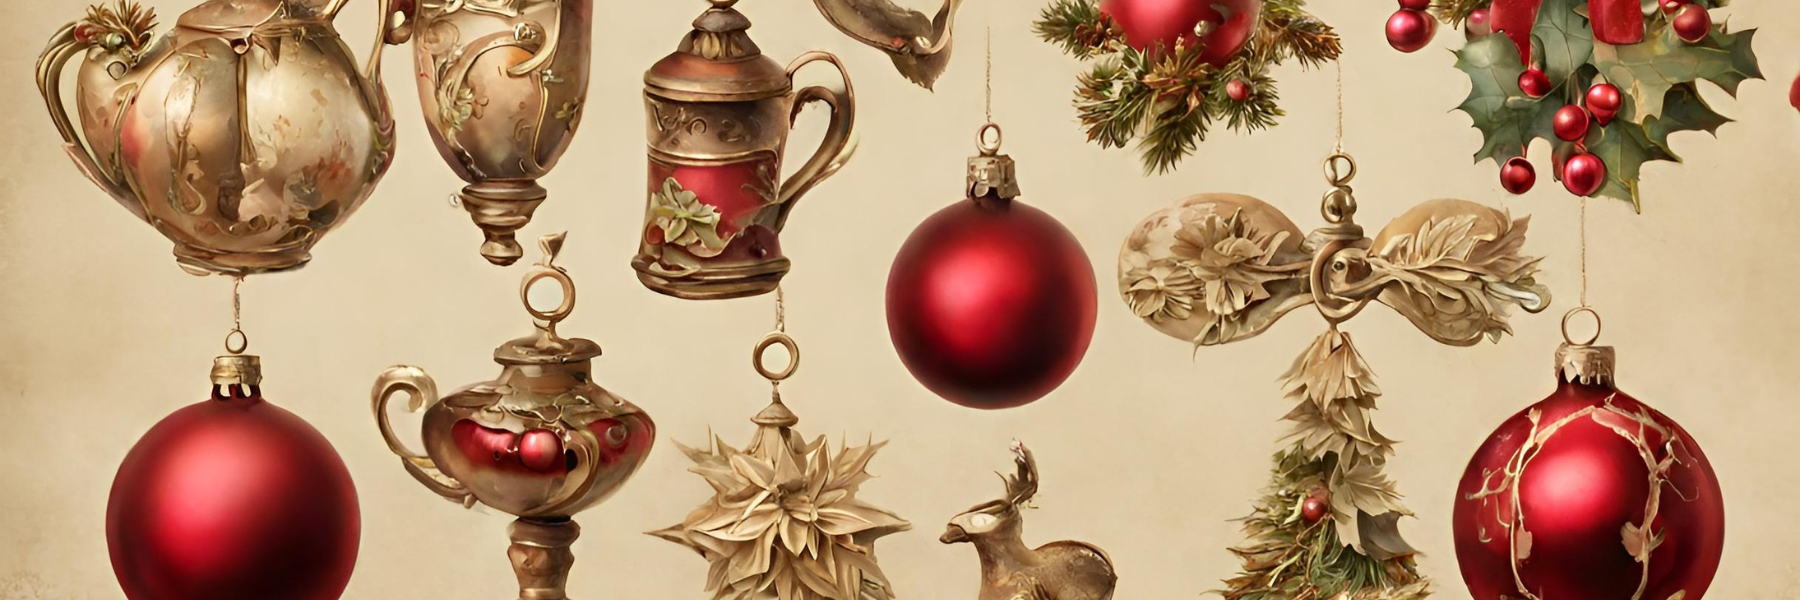 Antique Christmas Decor Ideas